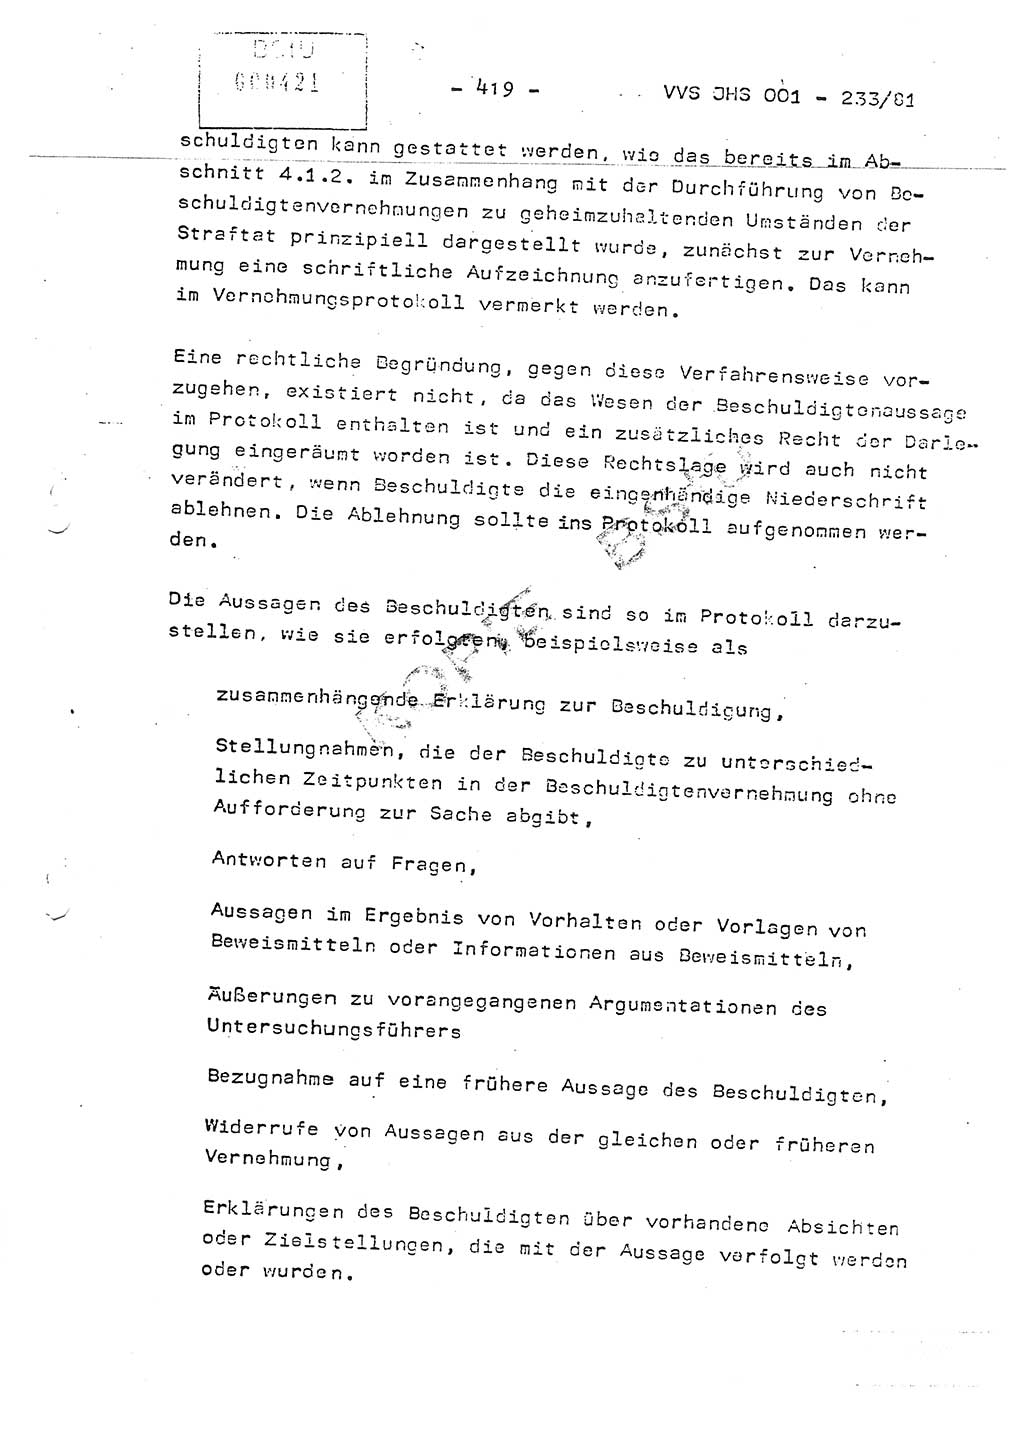 Dissertation Oberstleutnant Horst Zank (JHS), Oberstleutnant Dr. Karl-Heinz Knoblauch (JHS), Oberstleutnant Gustav-Adolf Kowalewski (HA Ⅸ), Oberstleutnant Wolfgang Plötner (HA Ⅸ), Ministerium für Staatssicherheit (MfS) [Deutsche Demokratische Republik (DDR)], Juristische Hochschule (JHS), Vertrauliche Verschlußsache (VVS) o001-233/81, Potsdam 1981, Blatt 419 (Diss. MfS DDR JHS VVS o001-233/81 1981, Bl. 419)